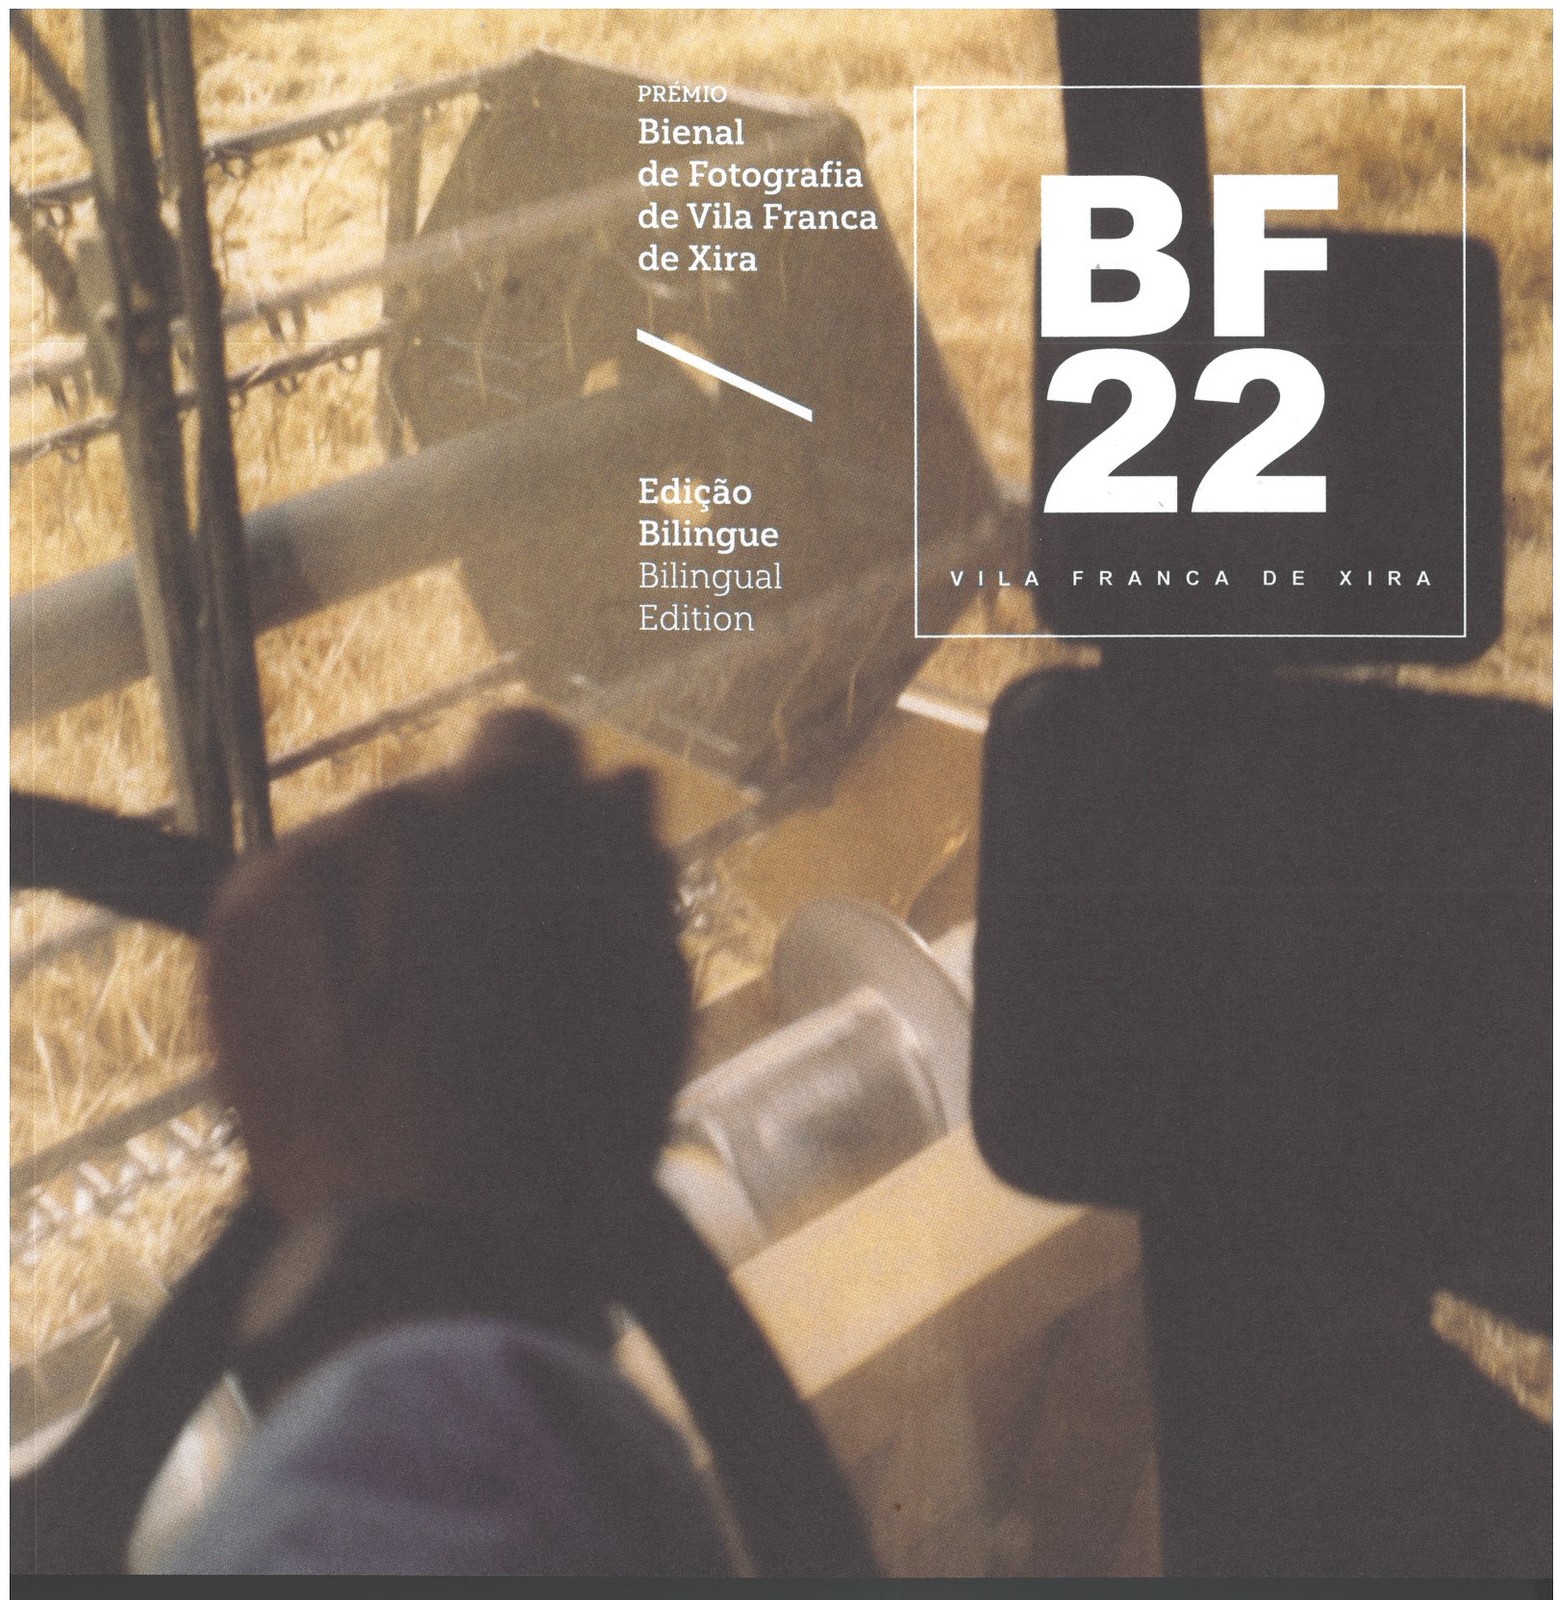 Prémio BF22 